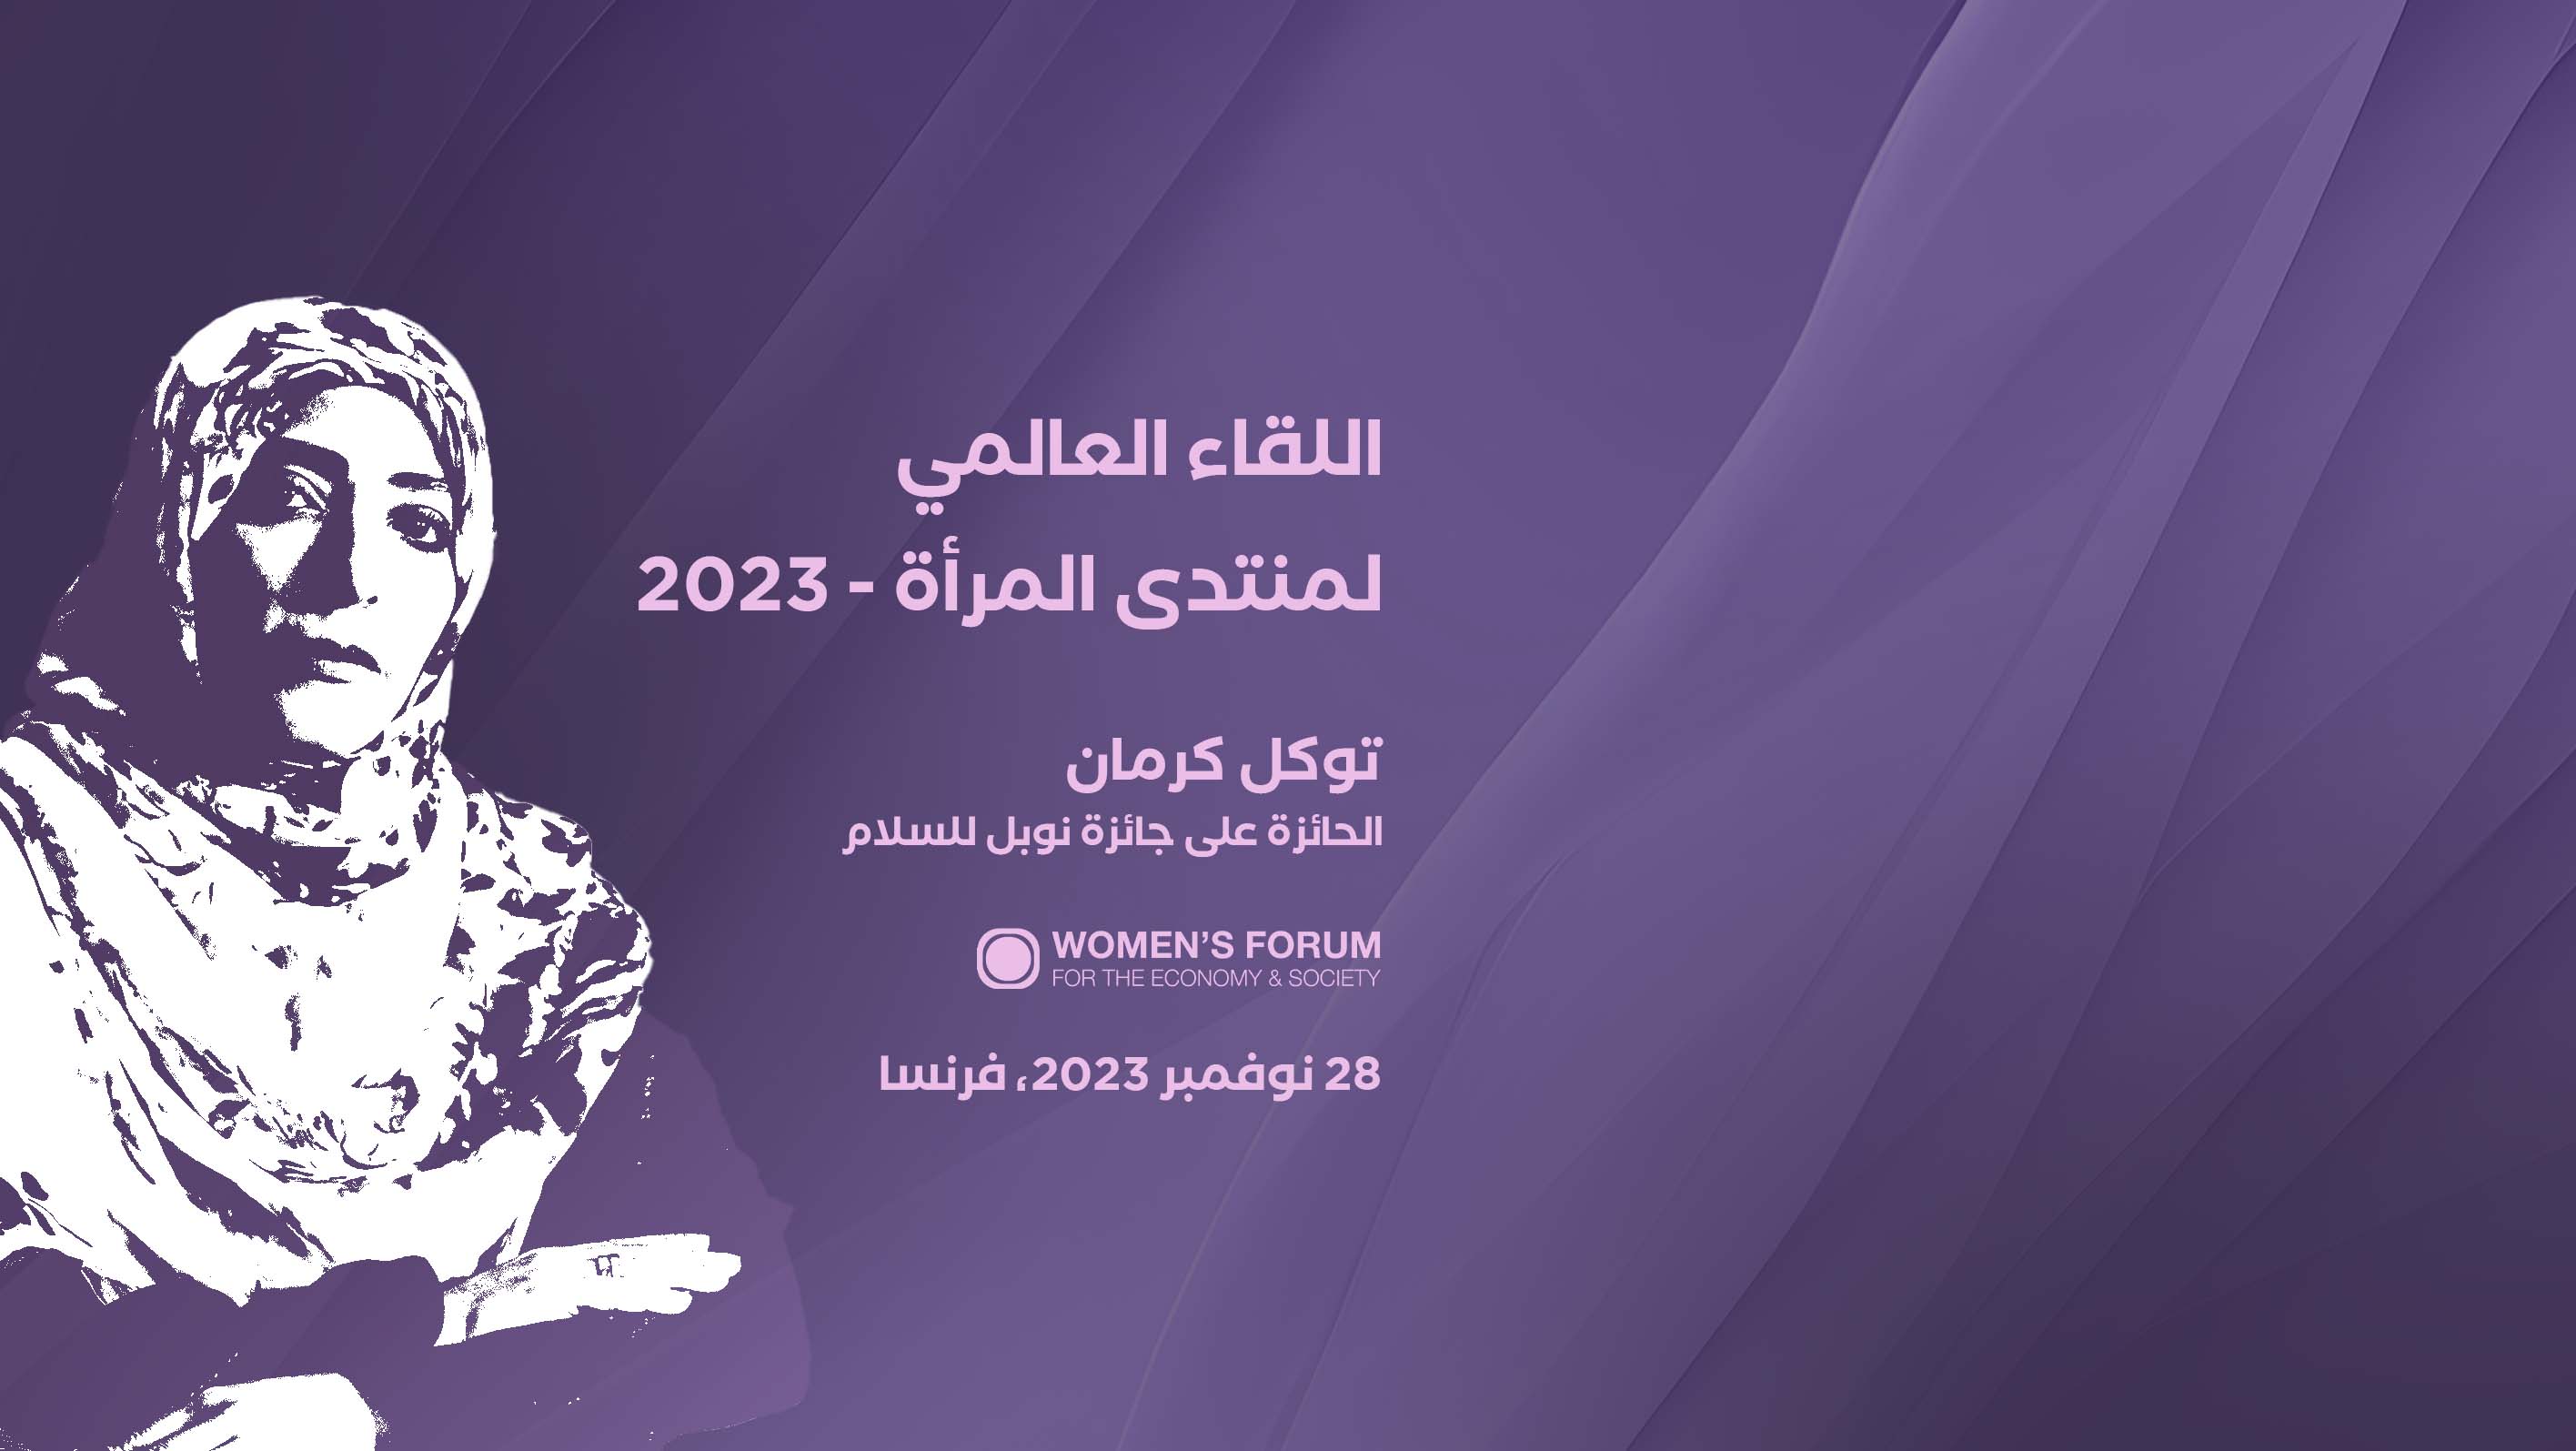 توكل كرمان تلقي الكلمة الافتتاحية في اللقاء العالمي لمنتدى المرأة 2023 في باريس